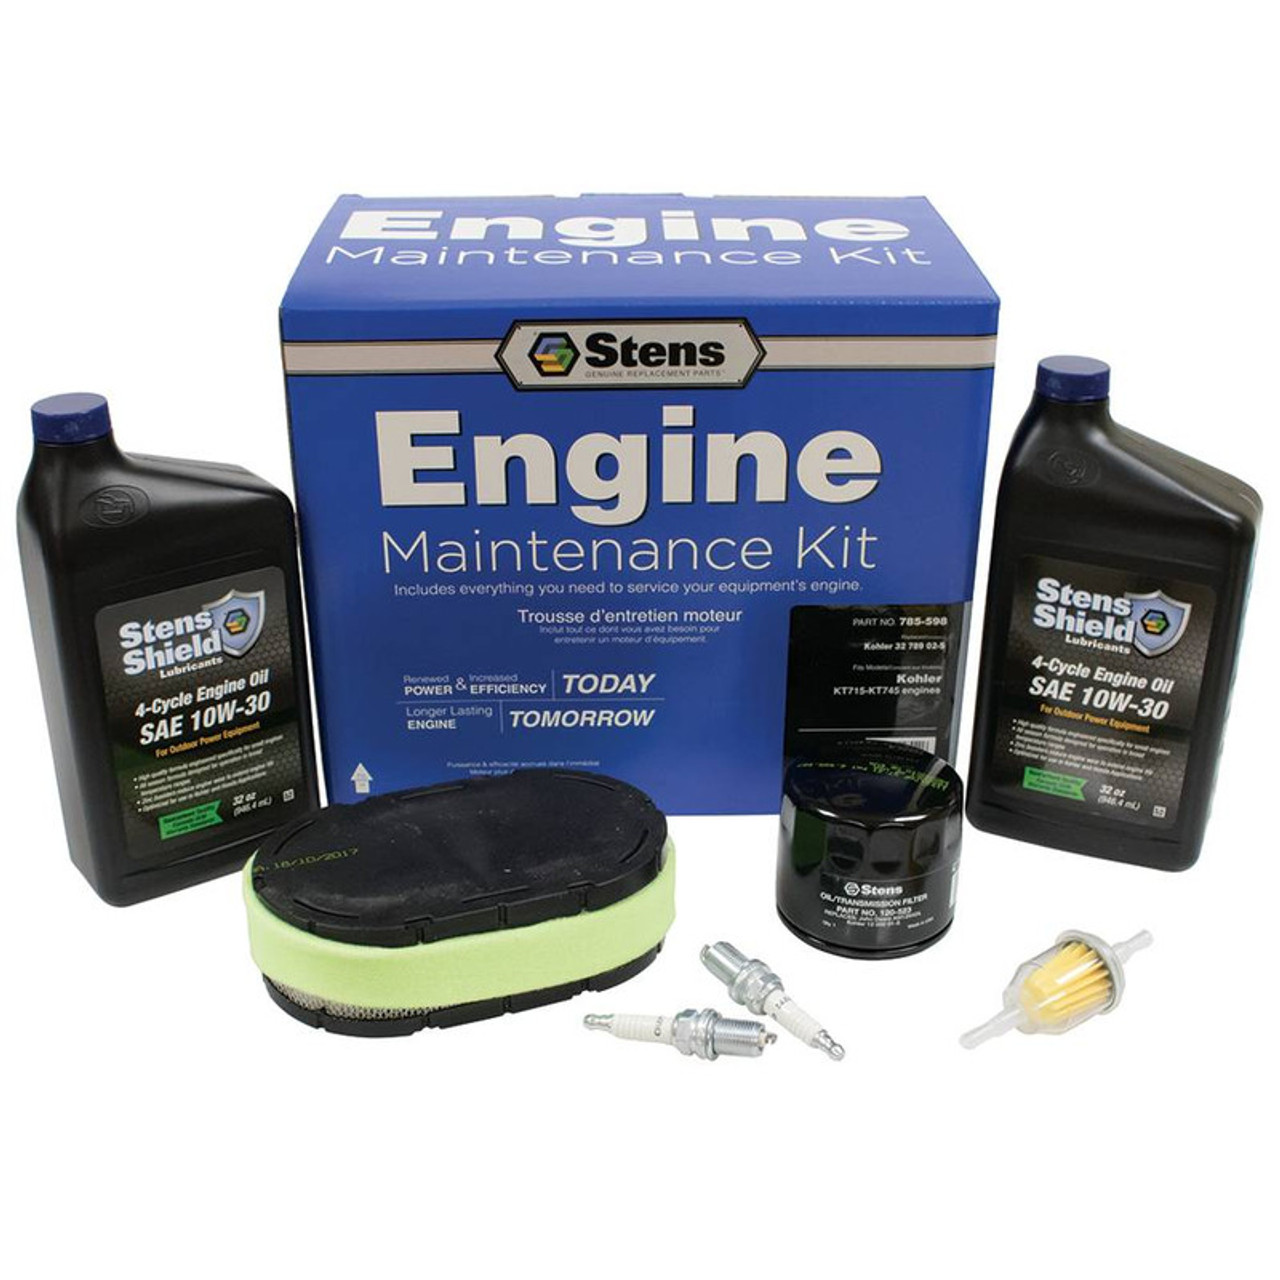 Engine Maintenance Kit 785-598